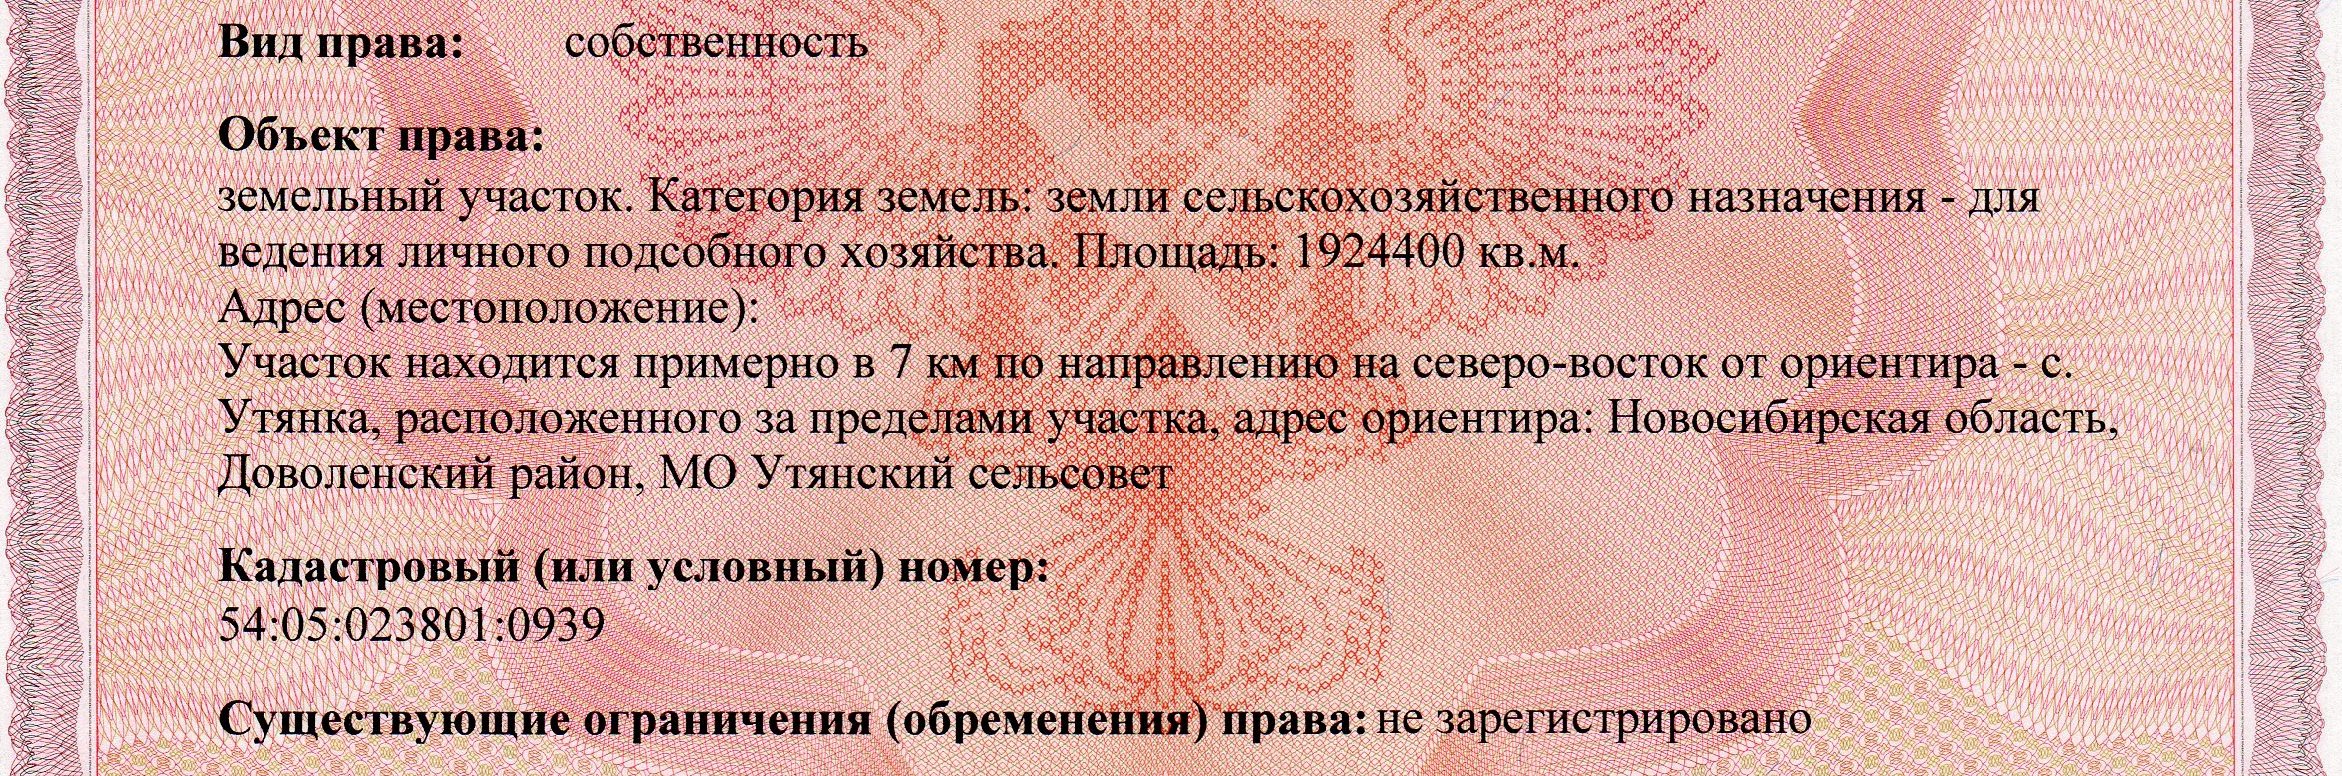 Продажа участка 1924400 м. кв. в городе Новосибирск, фото 1, Новосибирская область